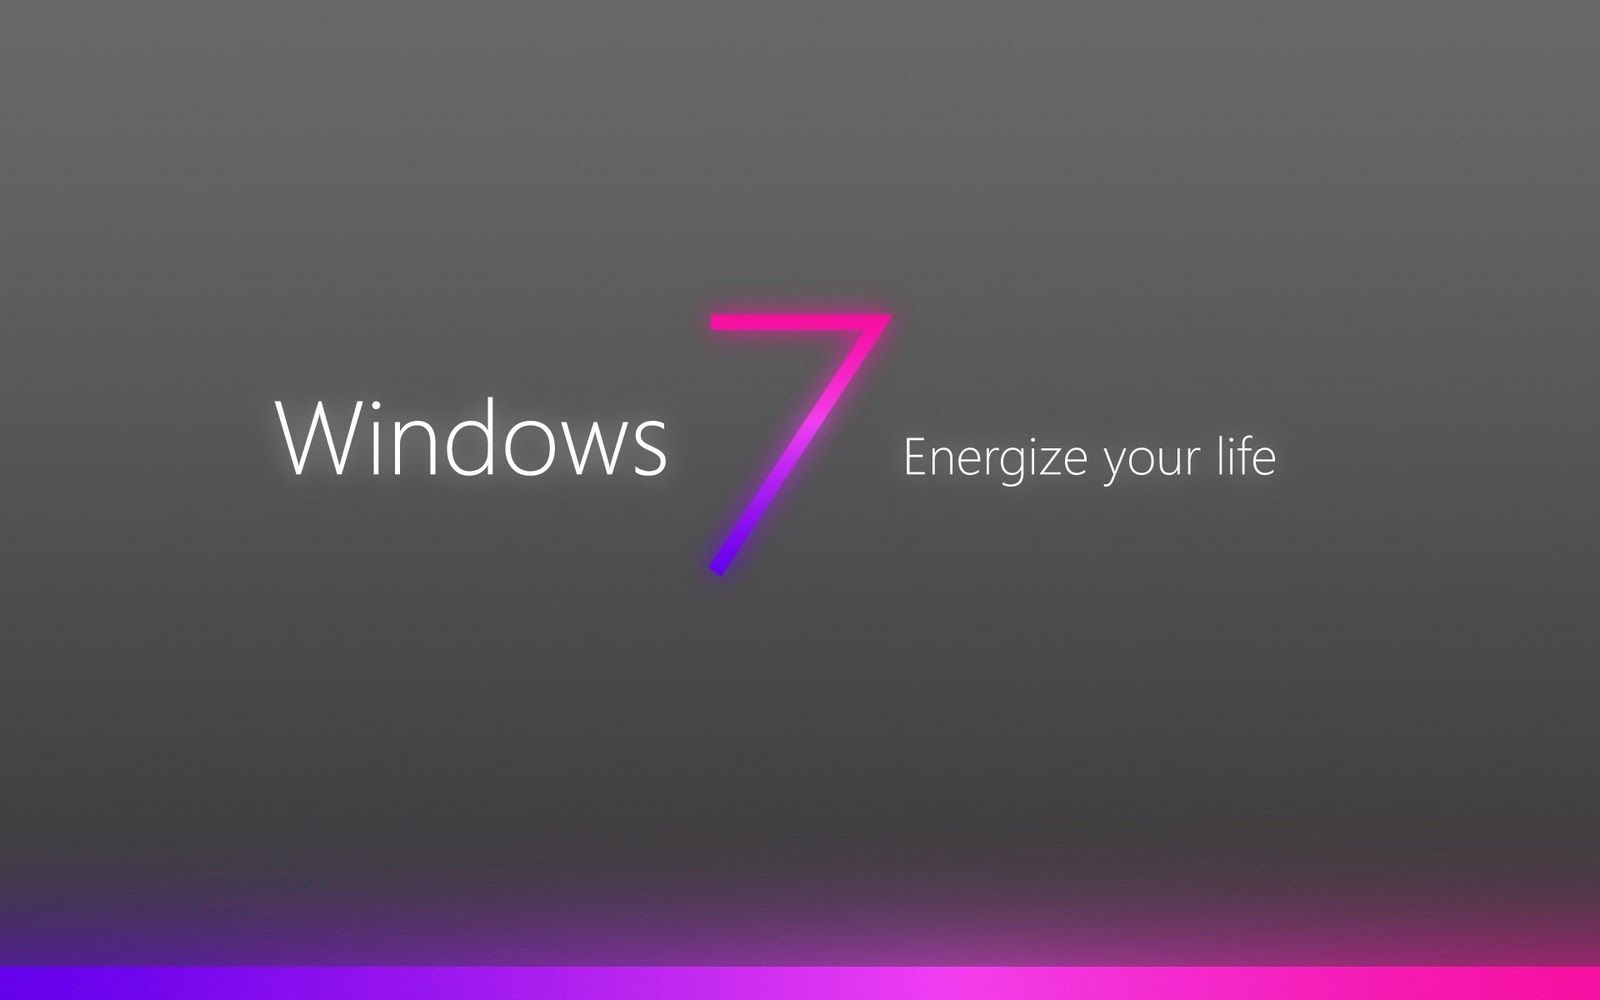 Hình nền Windows 7 màu hồng sẽ khiến bạn phải trầm trồ vì nó đơn giản thật đẹp. Bạn không chỉ được tận hưởng vẻ đẹp tinh tế này mà còn cảm thấy thư giãn hơn khi nhìn vào màn hình máy tính của mình. Hãy cùng xem hình nền này để tìm thấy sự tĩnh lặng tâm hồn.